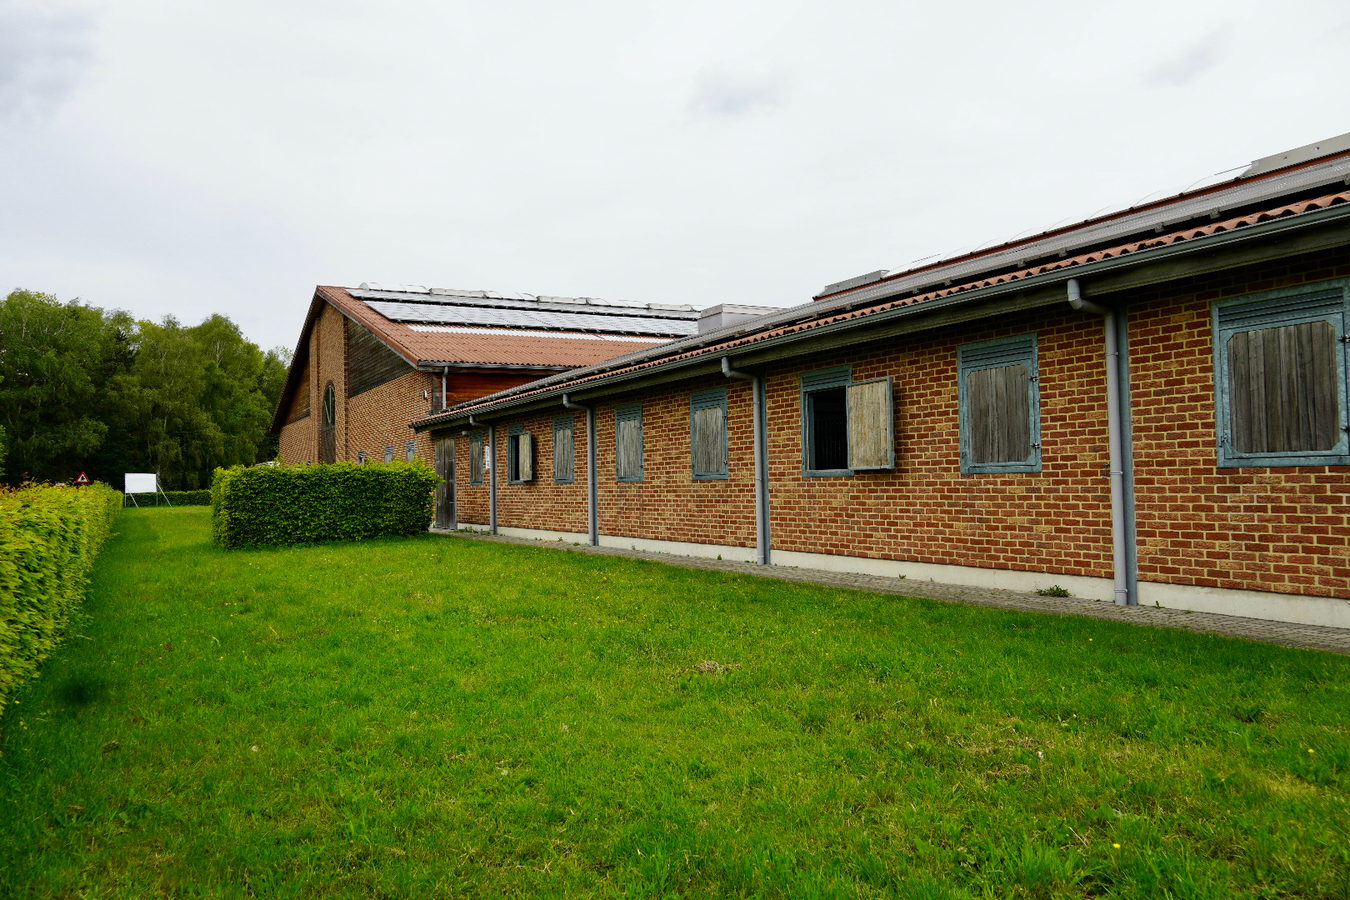 Property sold in Heist-op-den-Berg